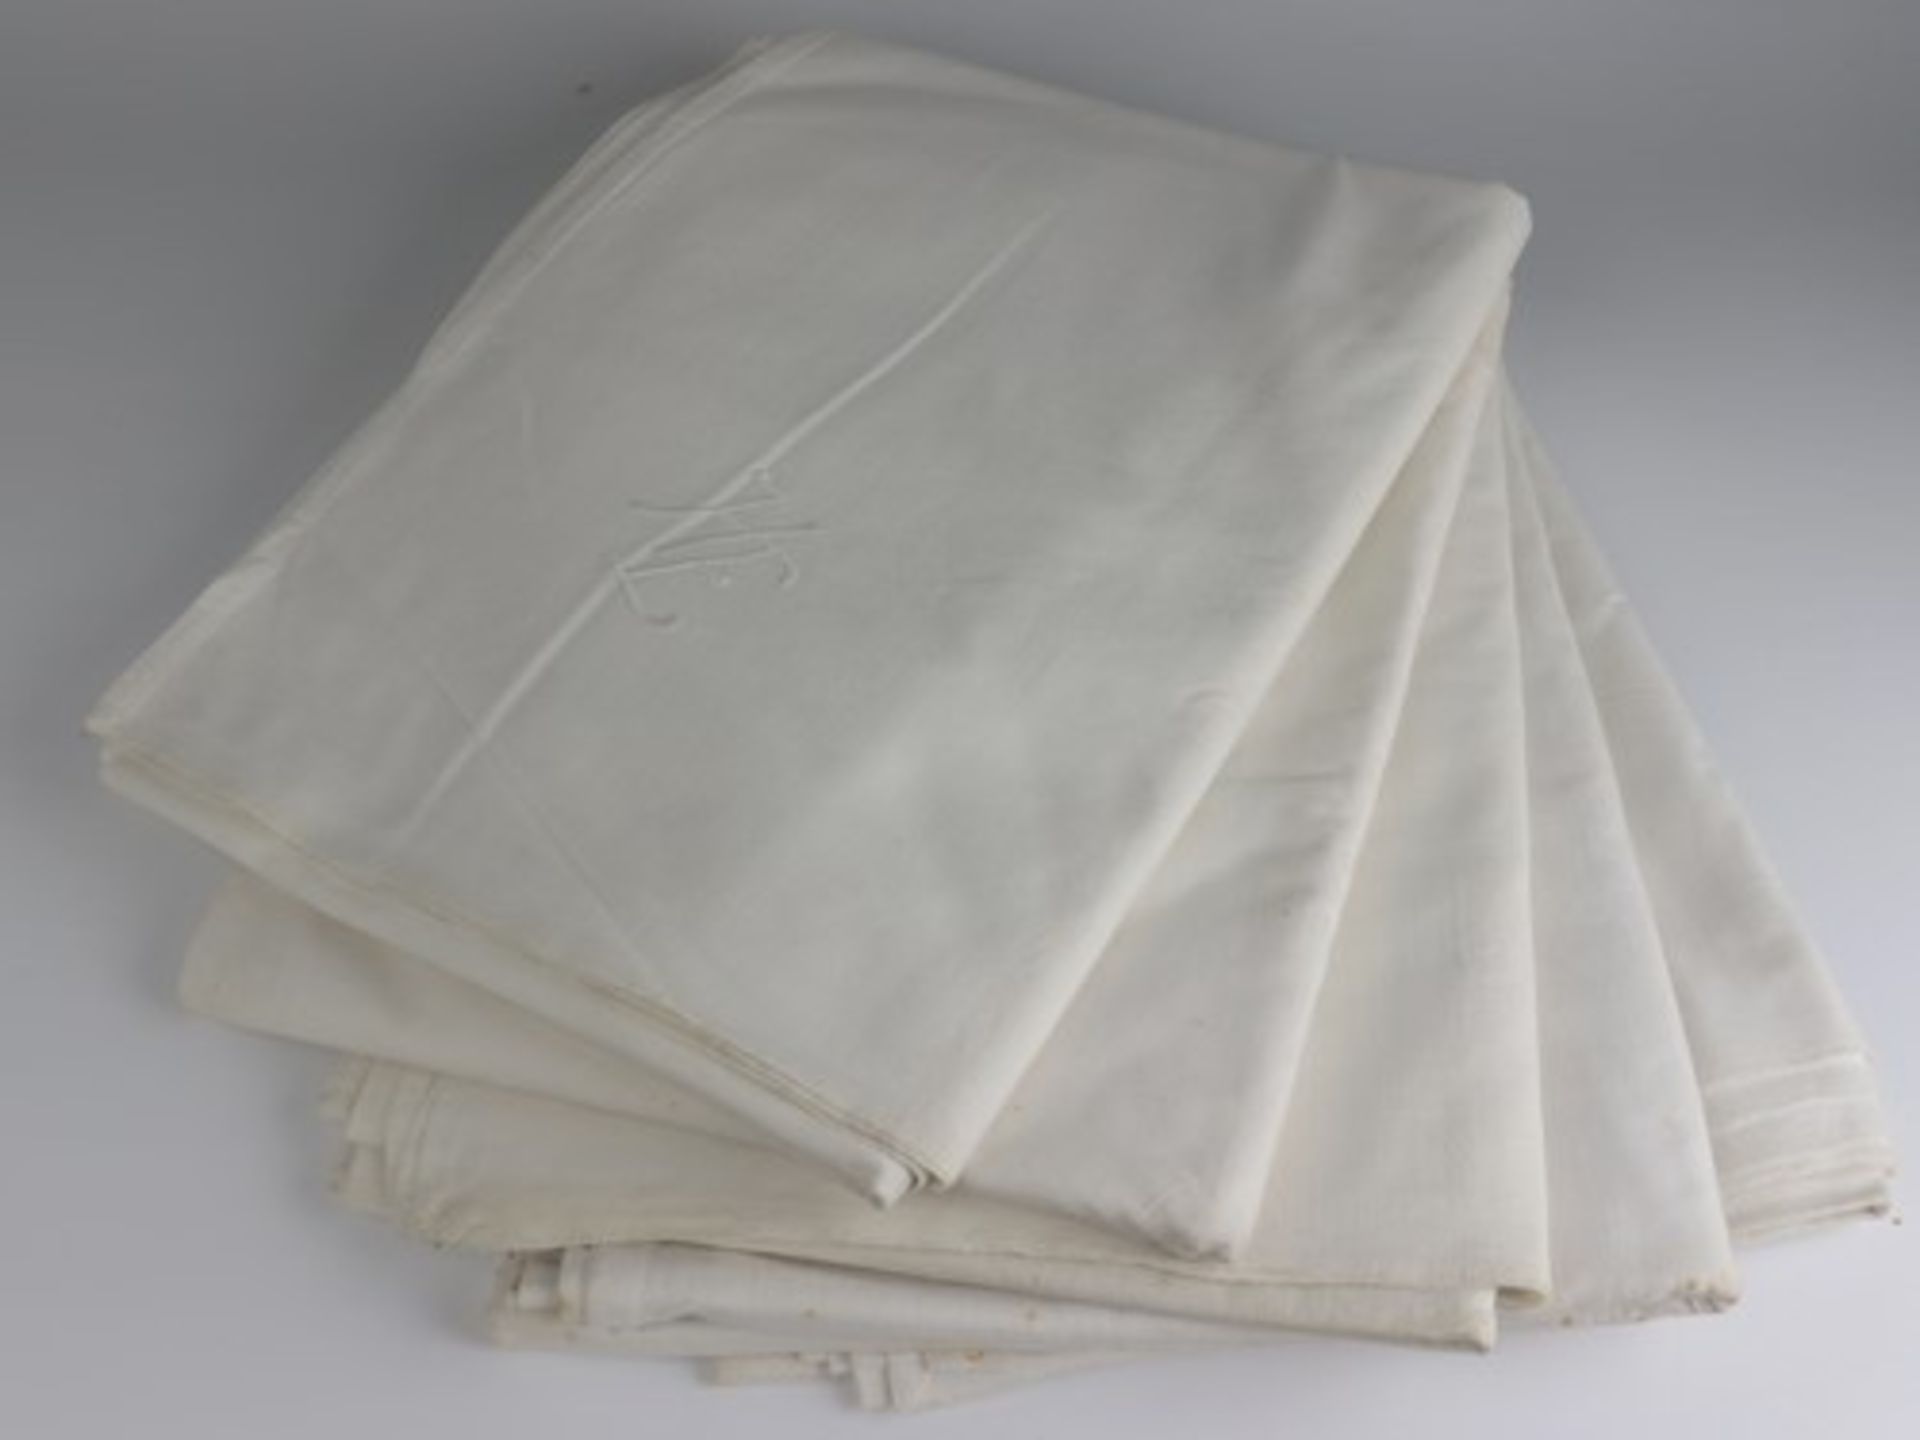 Bettlaken5 St., weiß, Monogr. "HE", gewaschen, Stock- u. Liegeflecken, ca. 240 x 160 cm